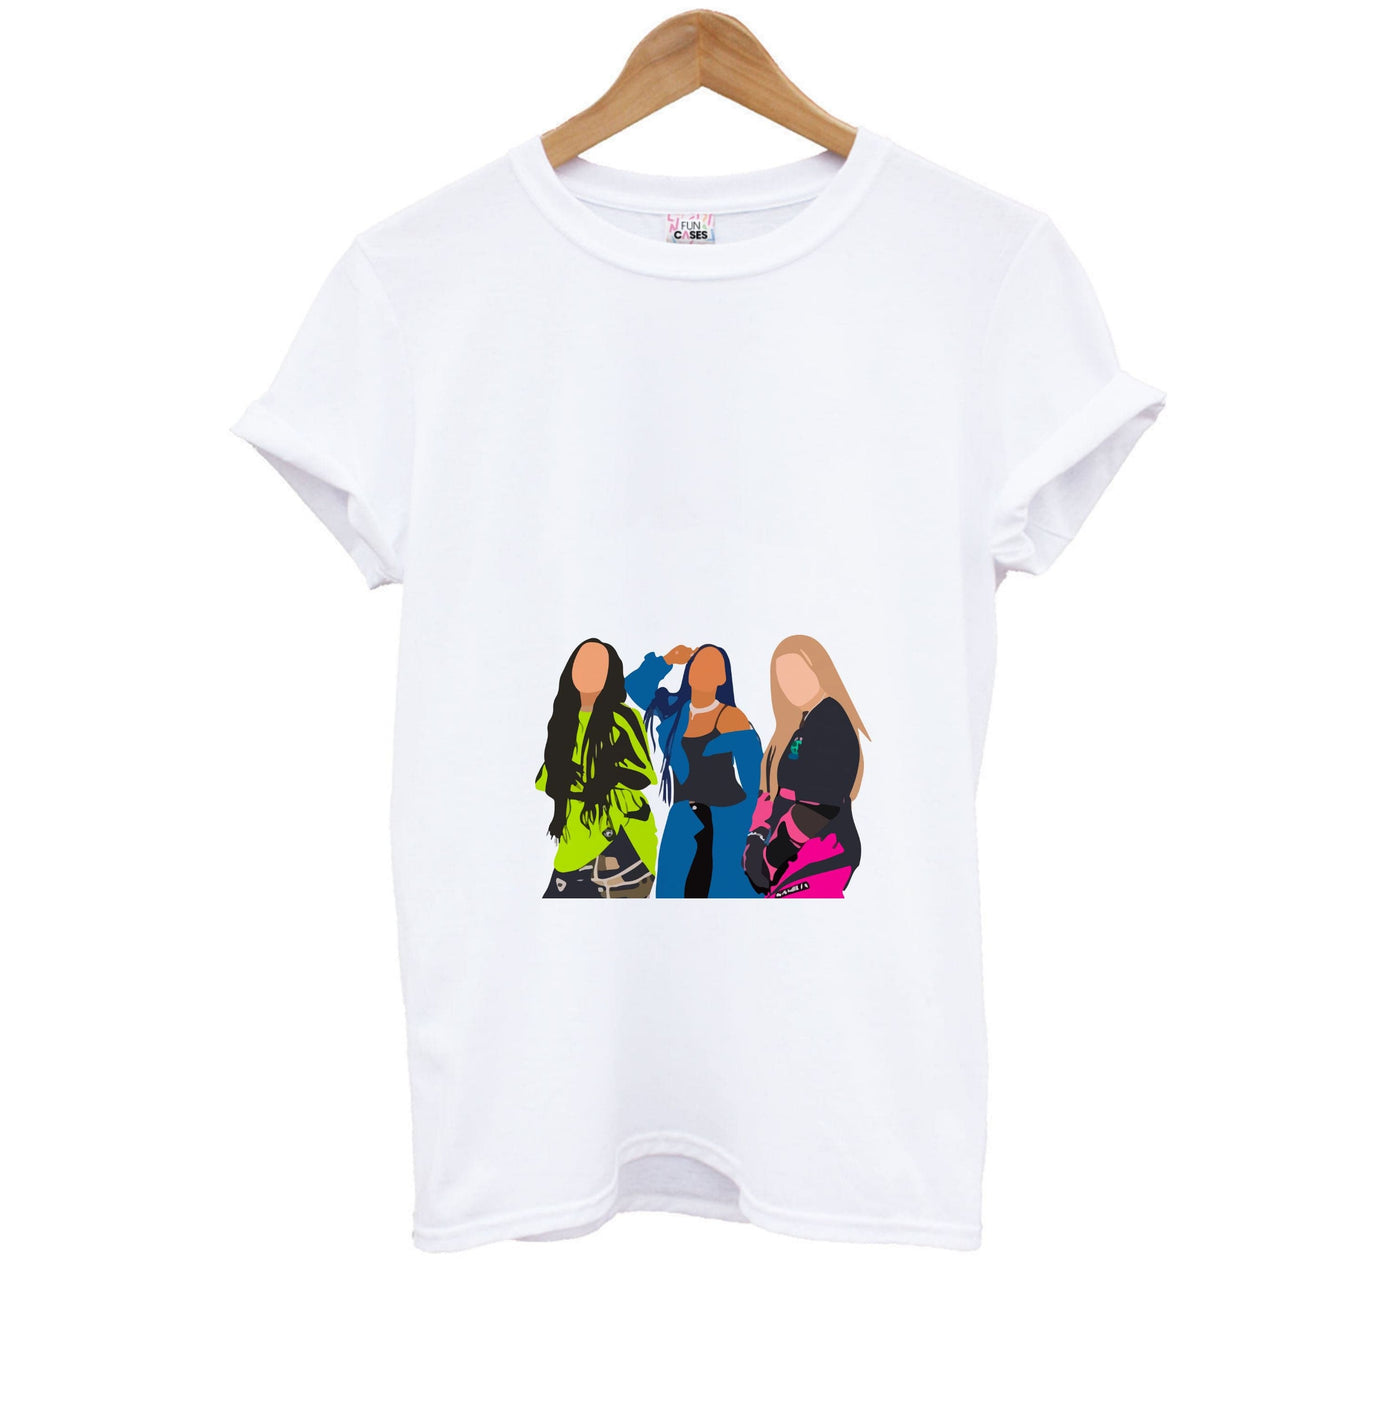 Faceless Little Mix Pose Kids T-Shirt